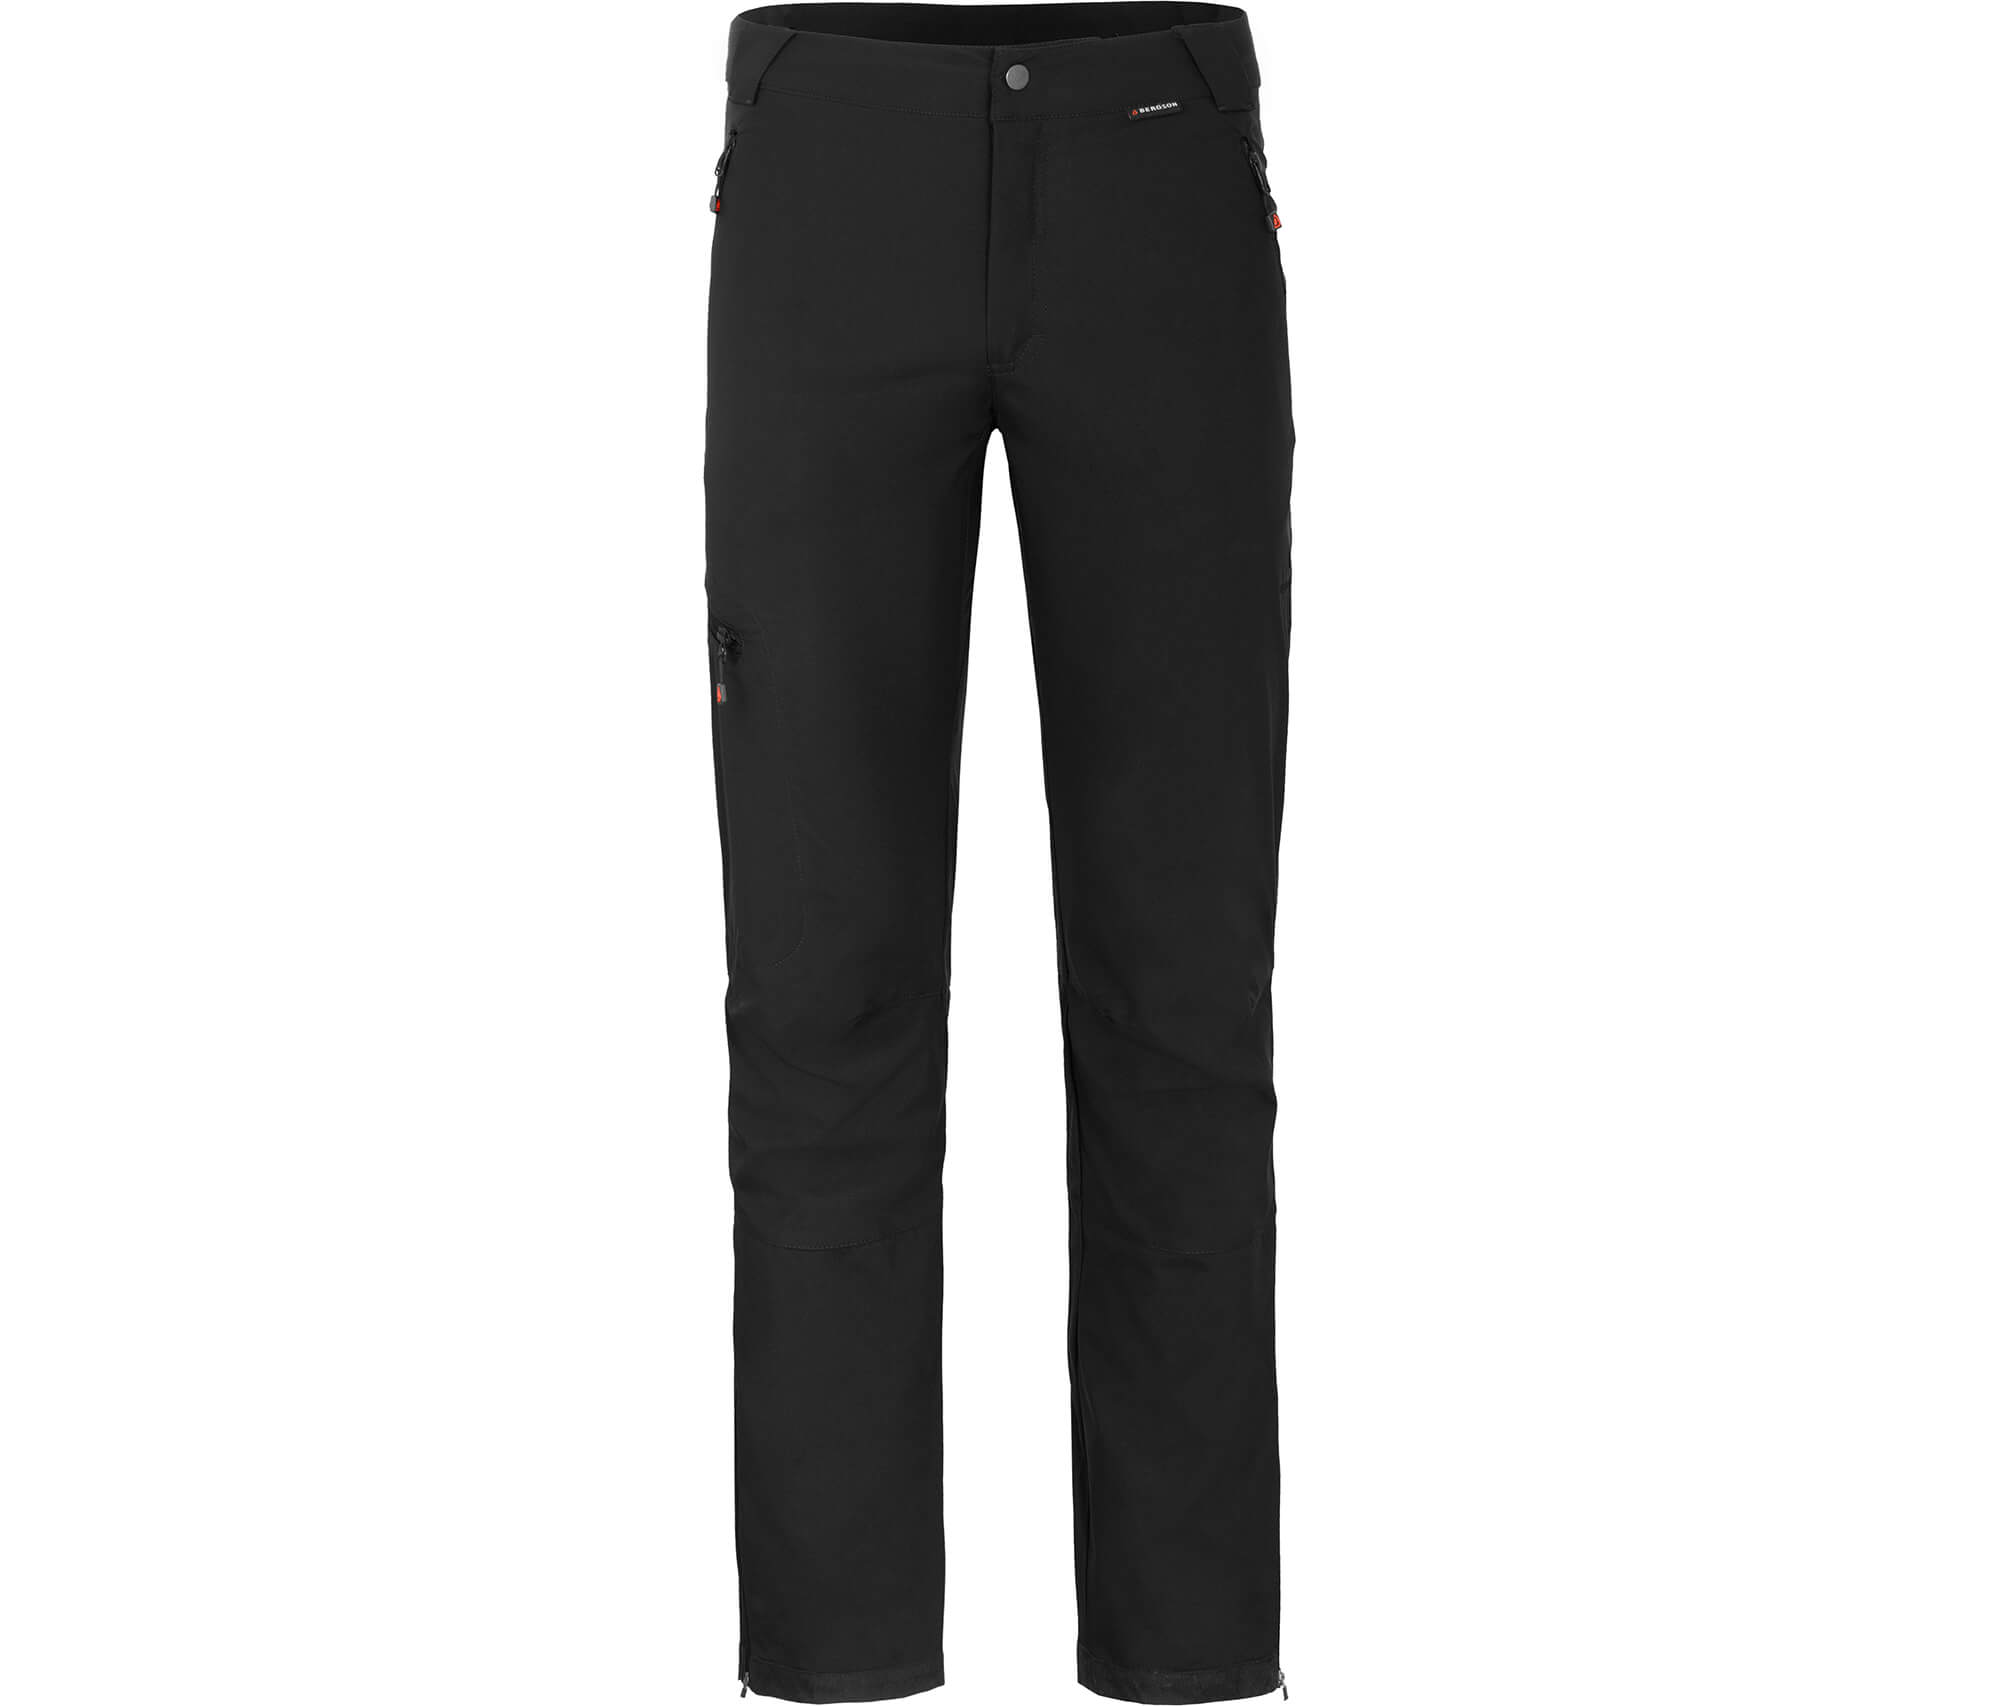 KALLE | Bergson schwarz --> gute Softshellhose, Herren - COMFORT & winddicht, strapazierfähig Sehr Outdoorbekleidung